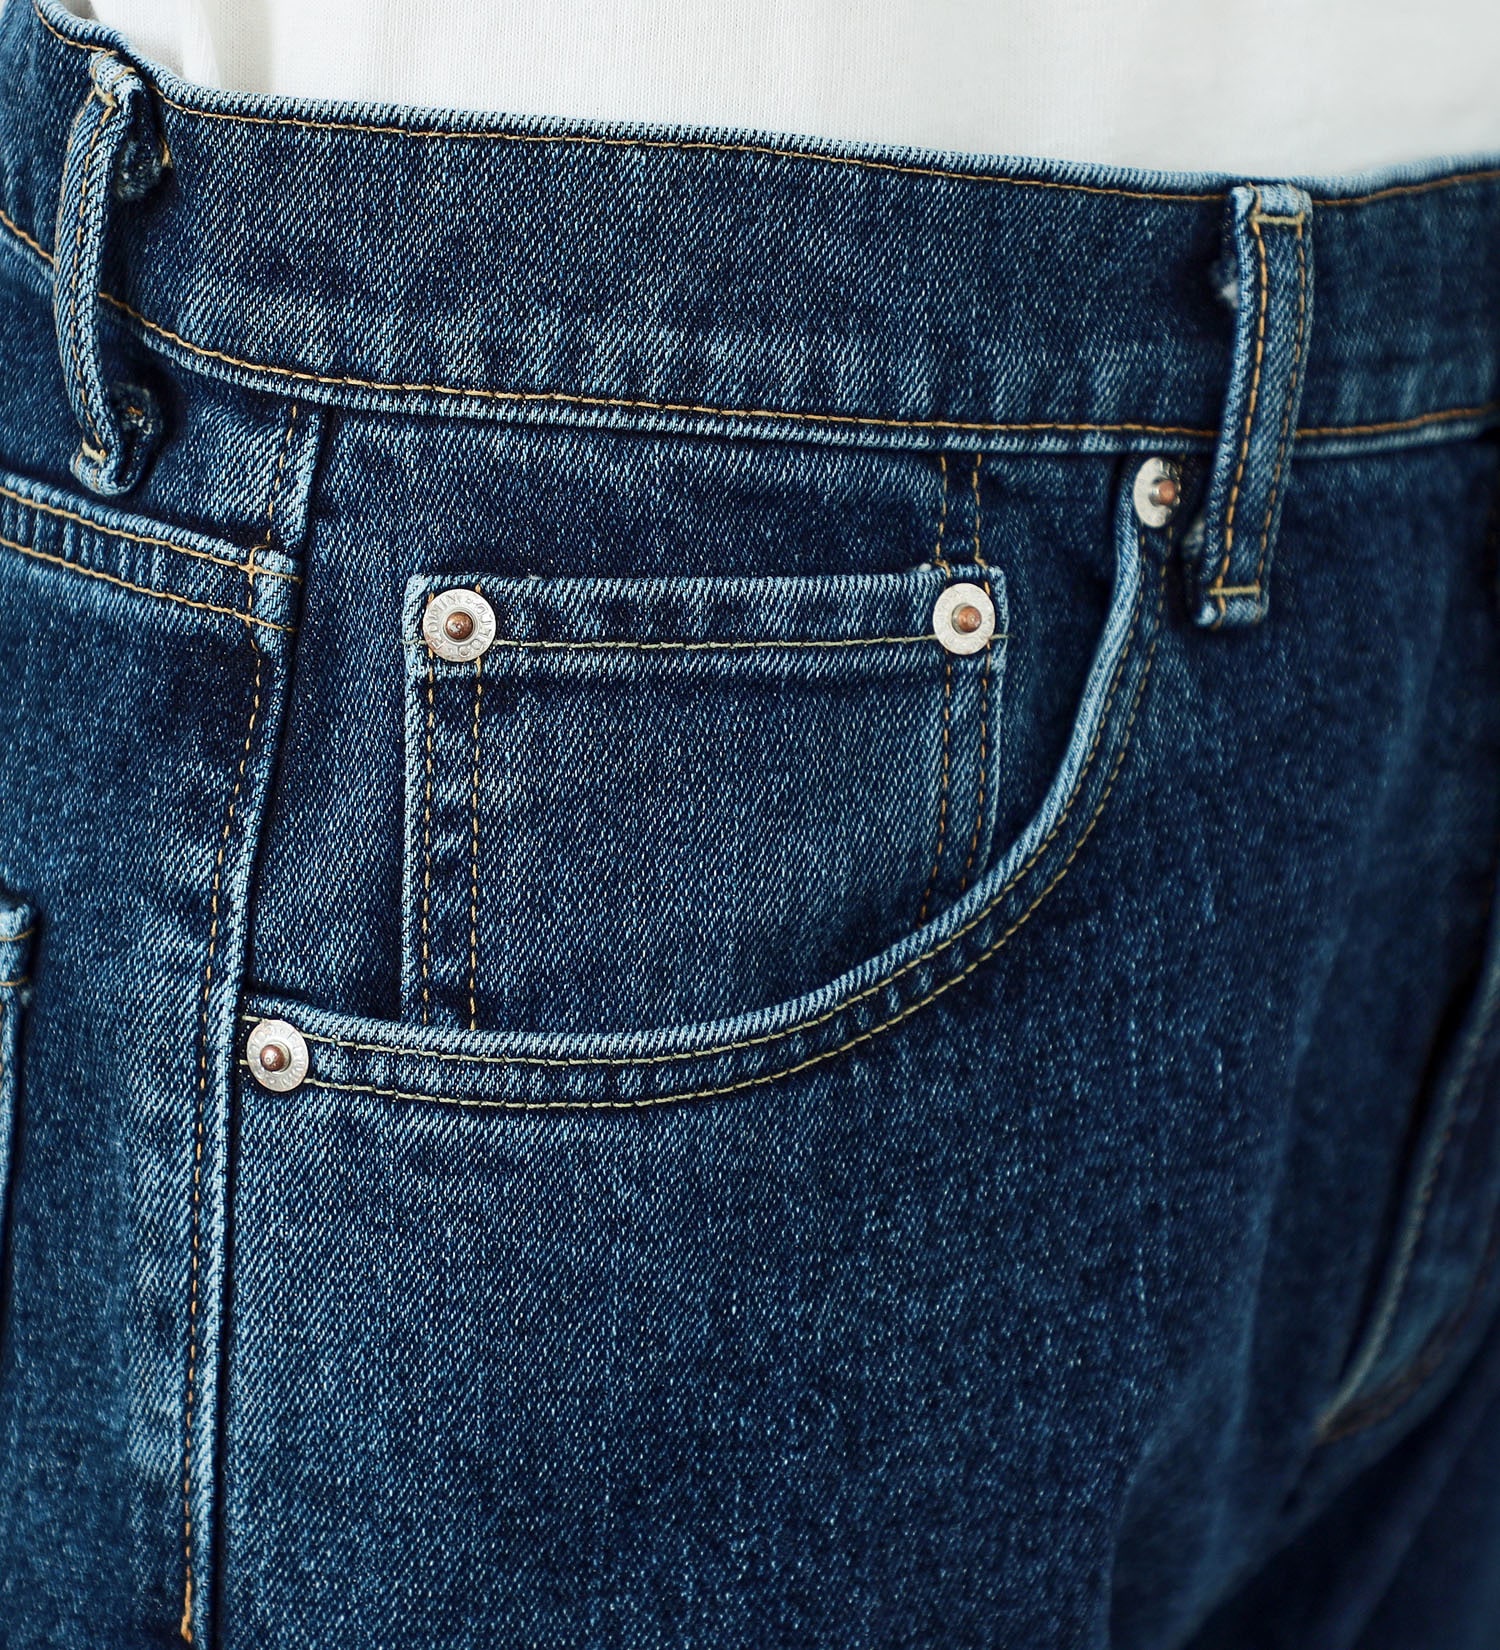 EDWIN(エドウイン)の【試着対象】【WEB限定】五・八デニム レギュラーストレートデニムパンツ ふつうのジーンズ 日本製 MADE IN JAPAN|パンツ/デニムパンツ/メンズ|中色ブルー